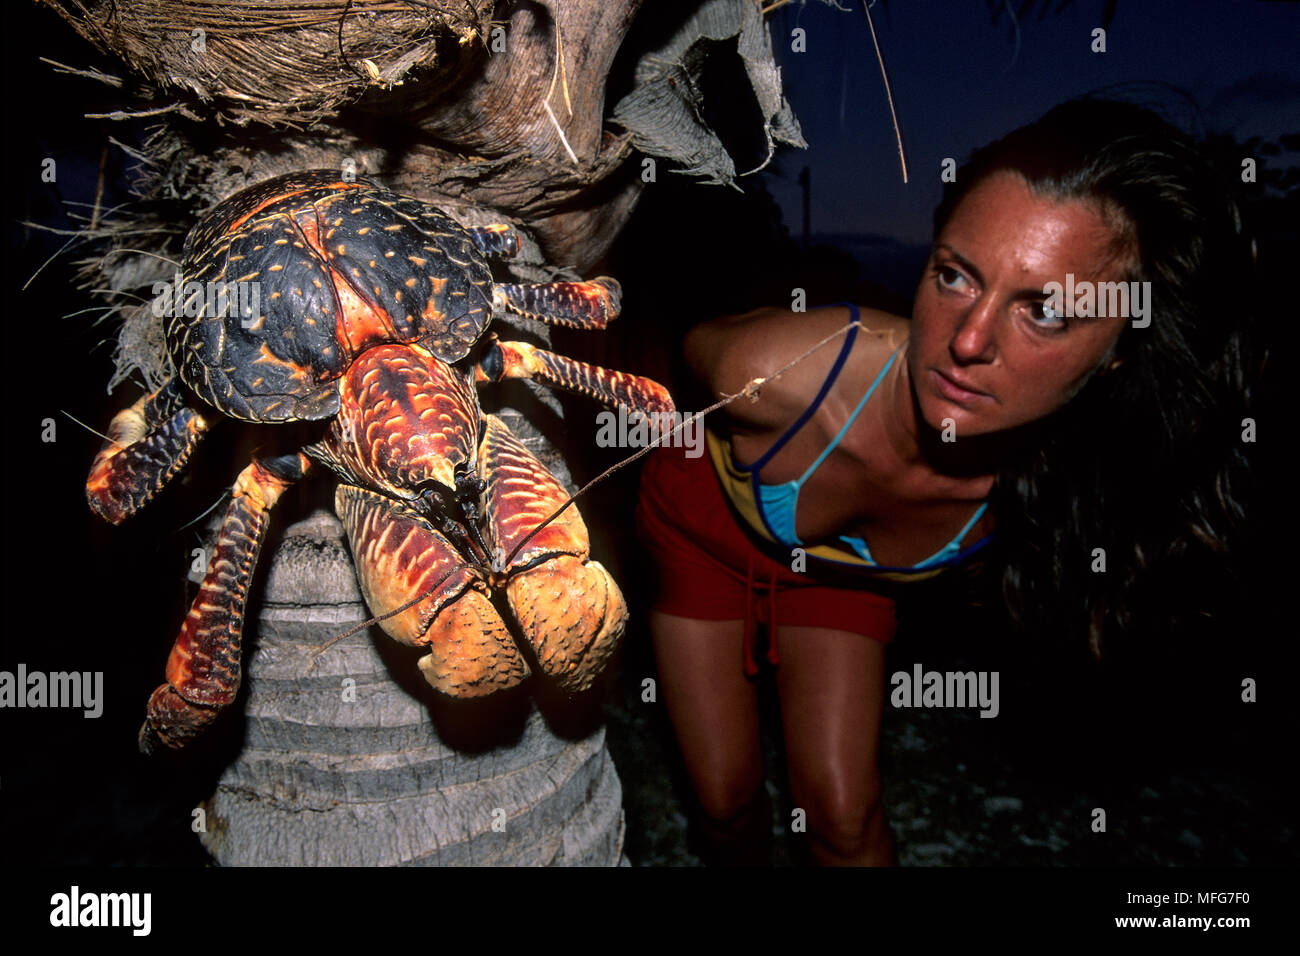 Donne Cercando il granchio del cocco su un Palm, Birgus latro, Aldabra Atoll, patrimonio mondiale naturale, Seychelles, Oceano Indiano Data: 24.06.08 RIF: ZB777 Foto Stock